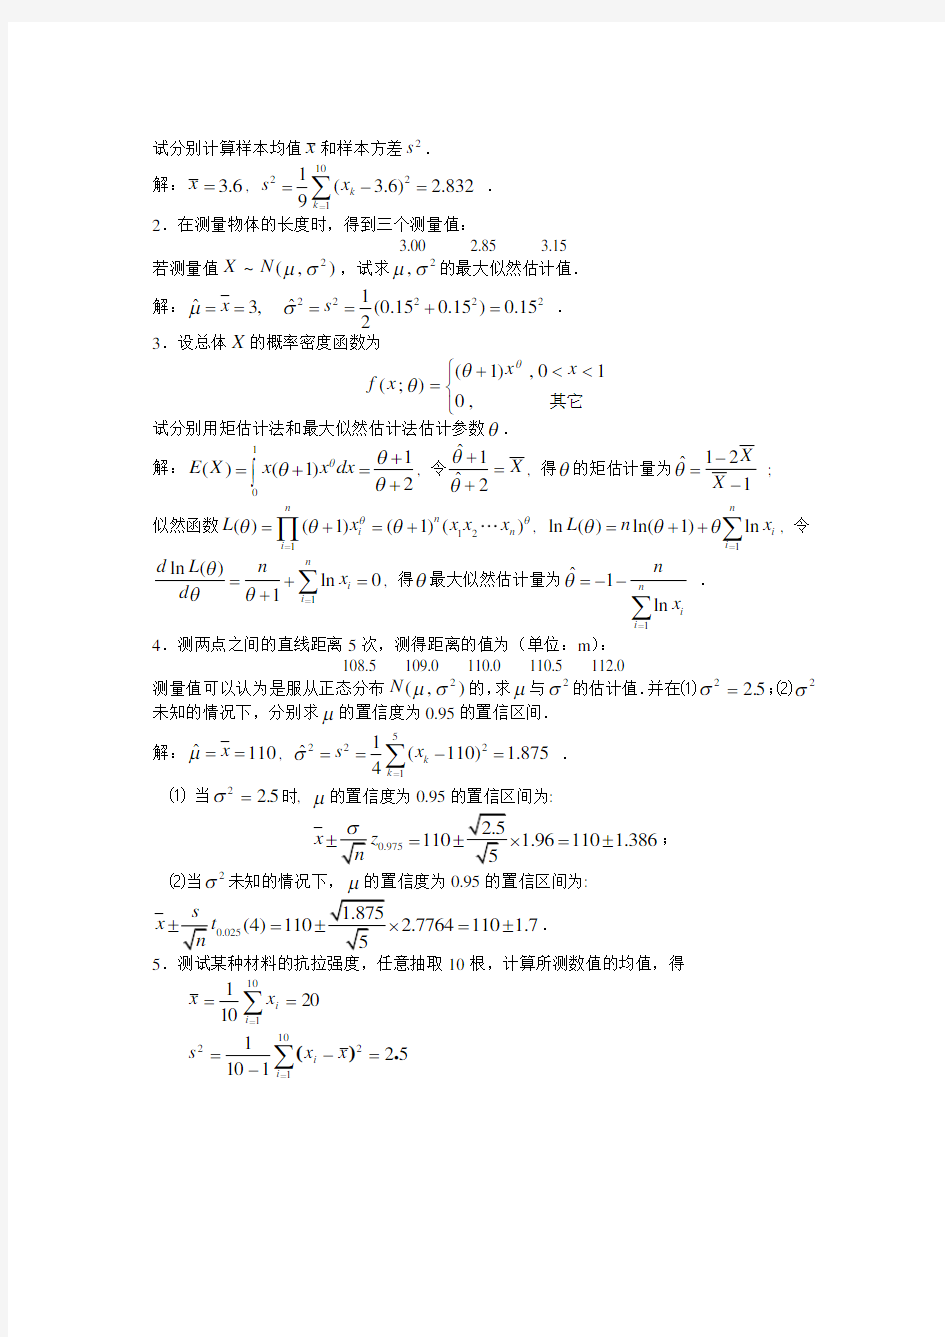 《工程数学(本)》作业解答(五)